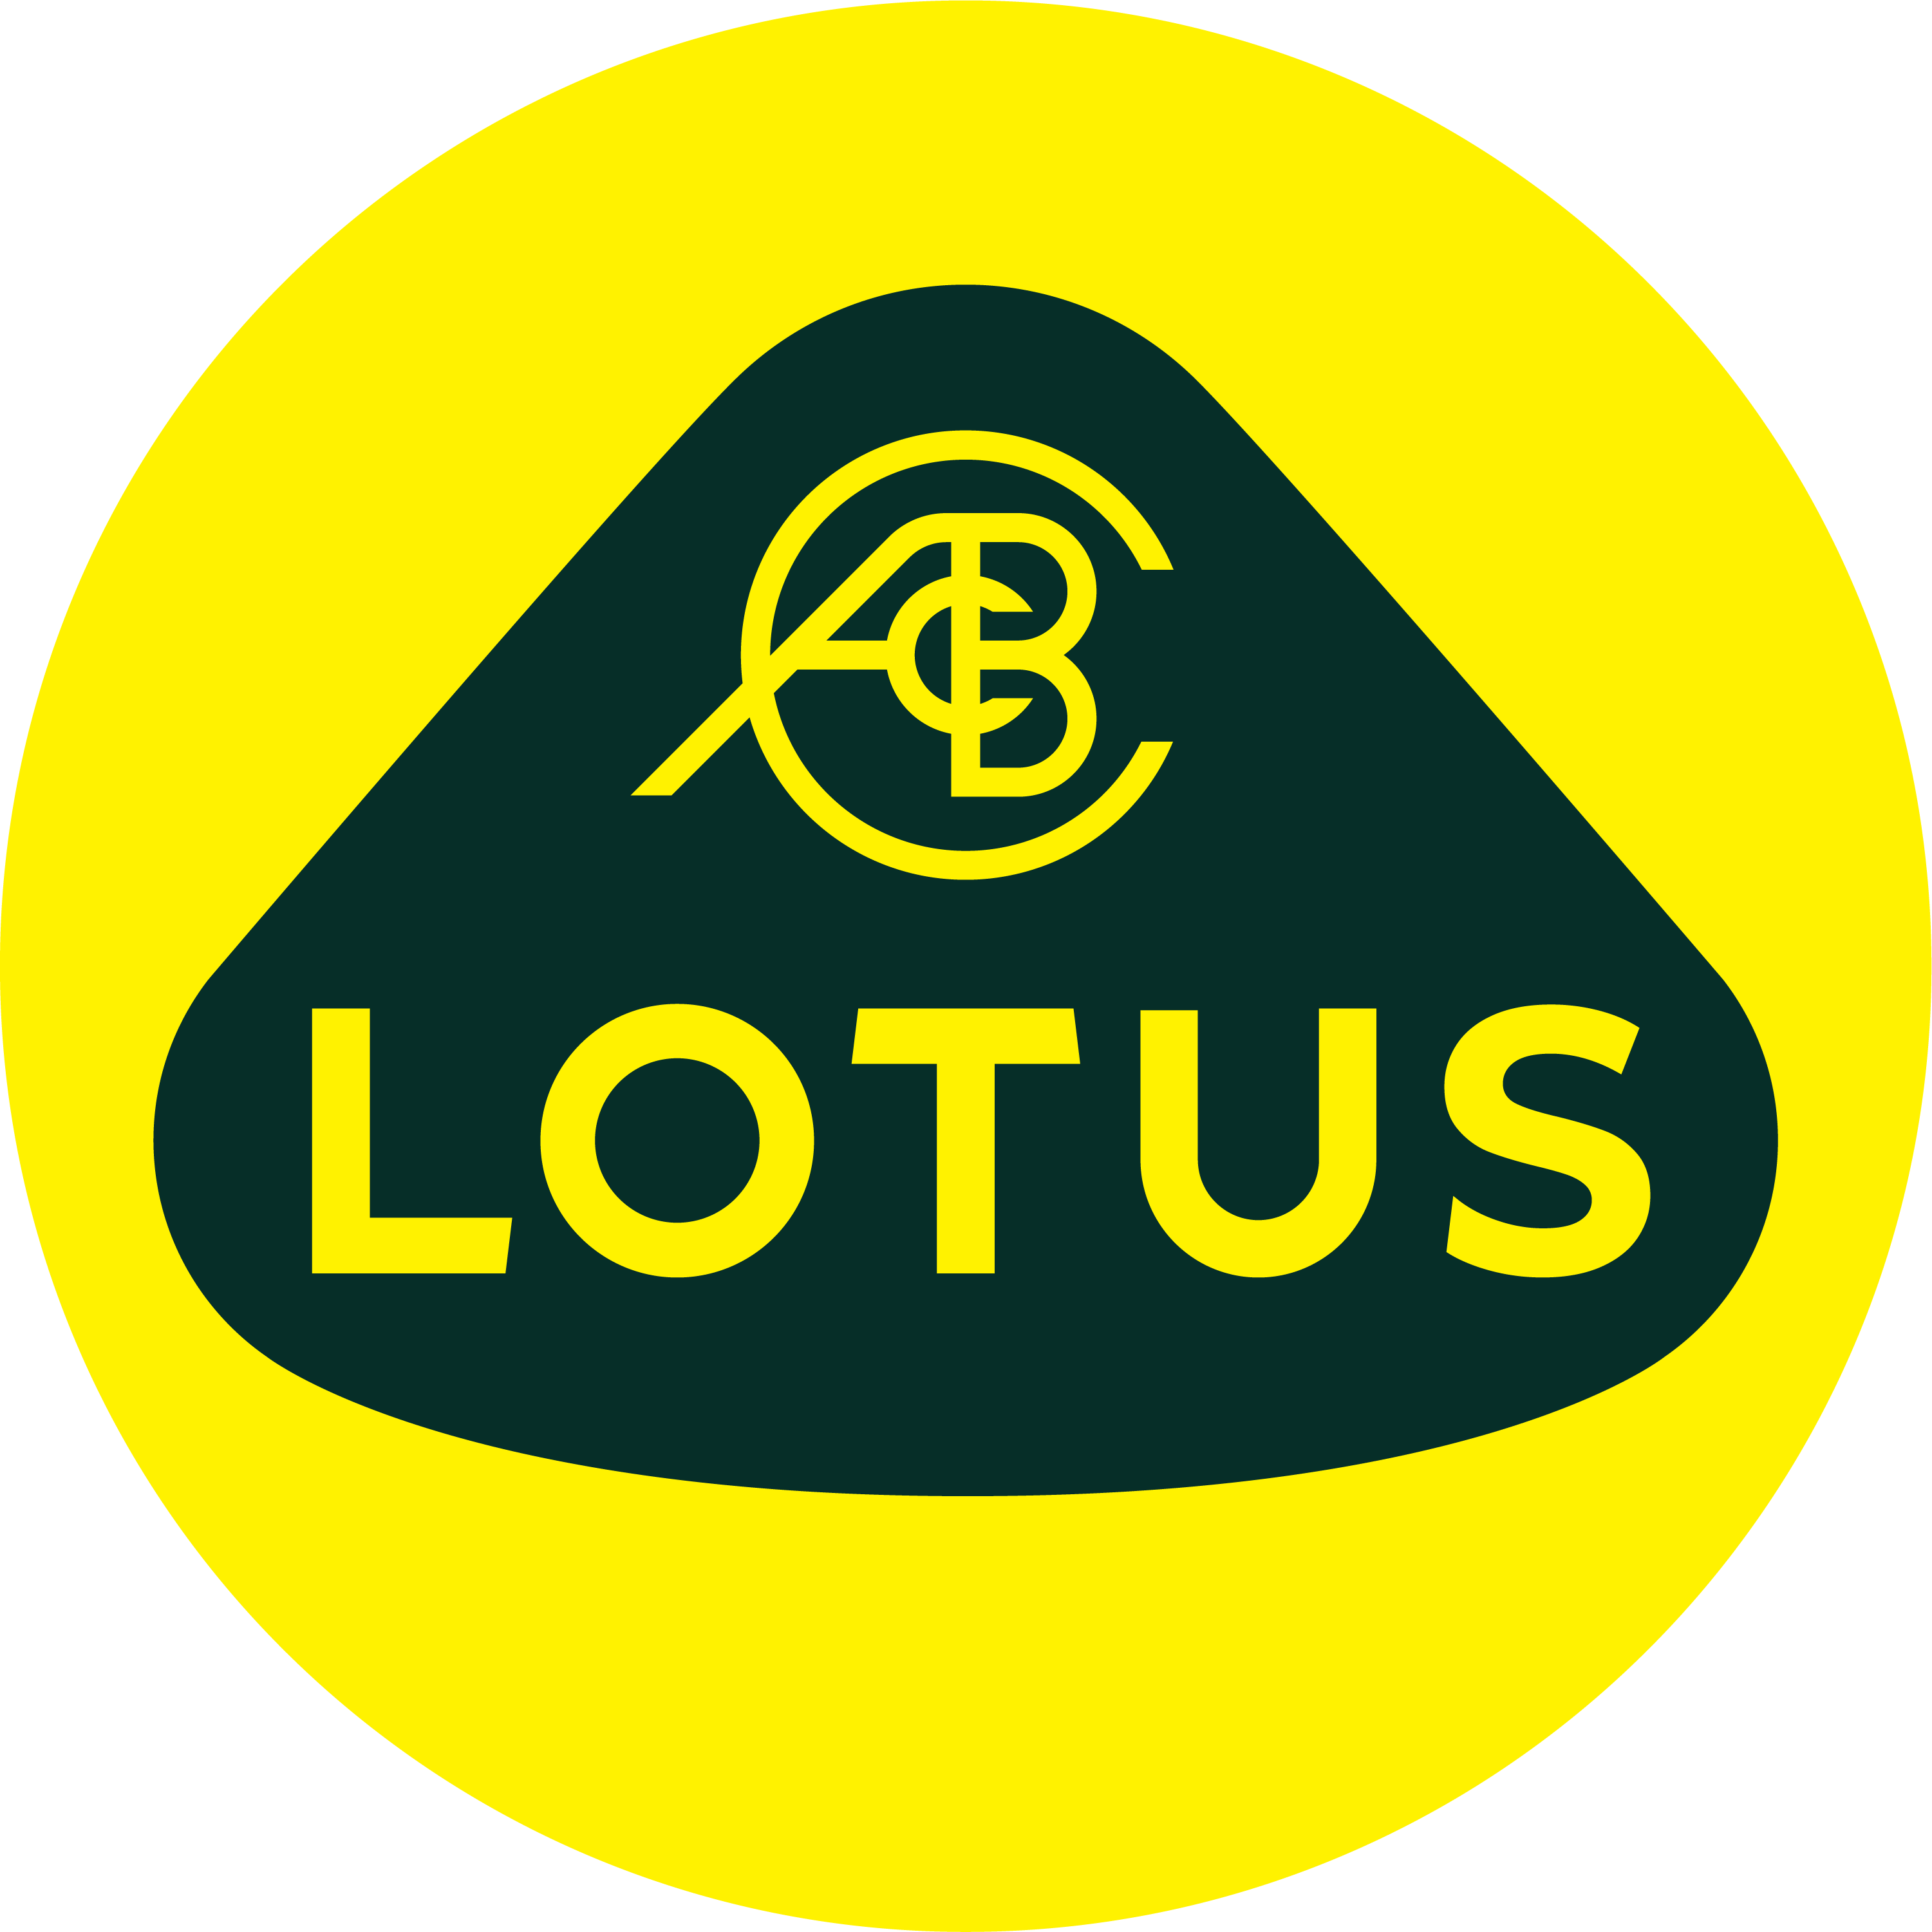 Link to https://www.lotuscars.com/en-GB